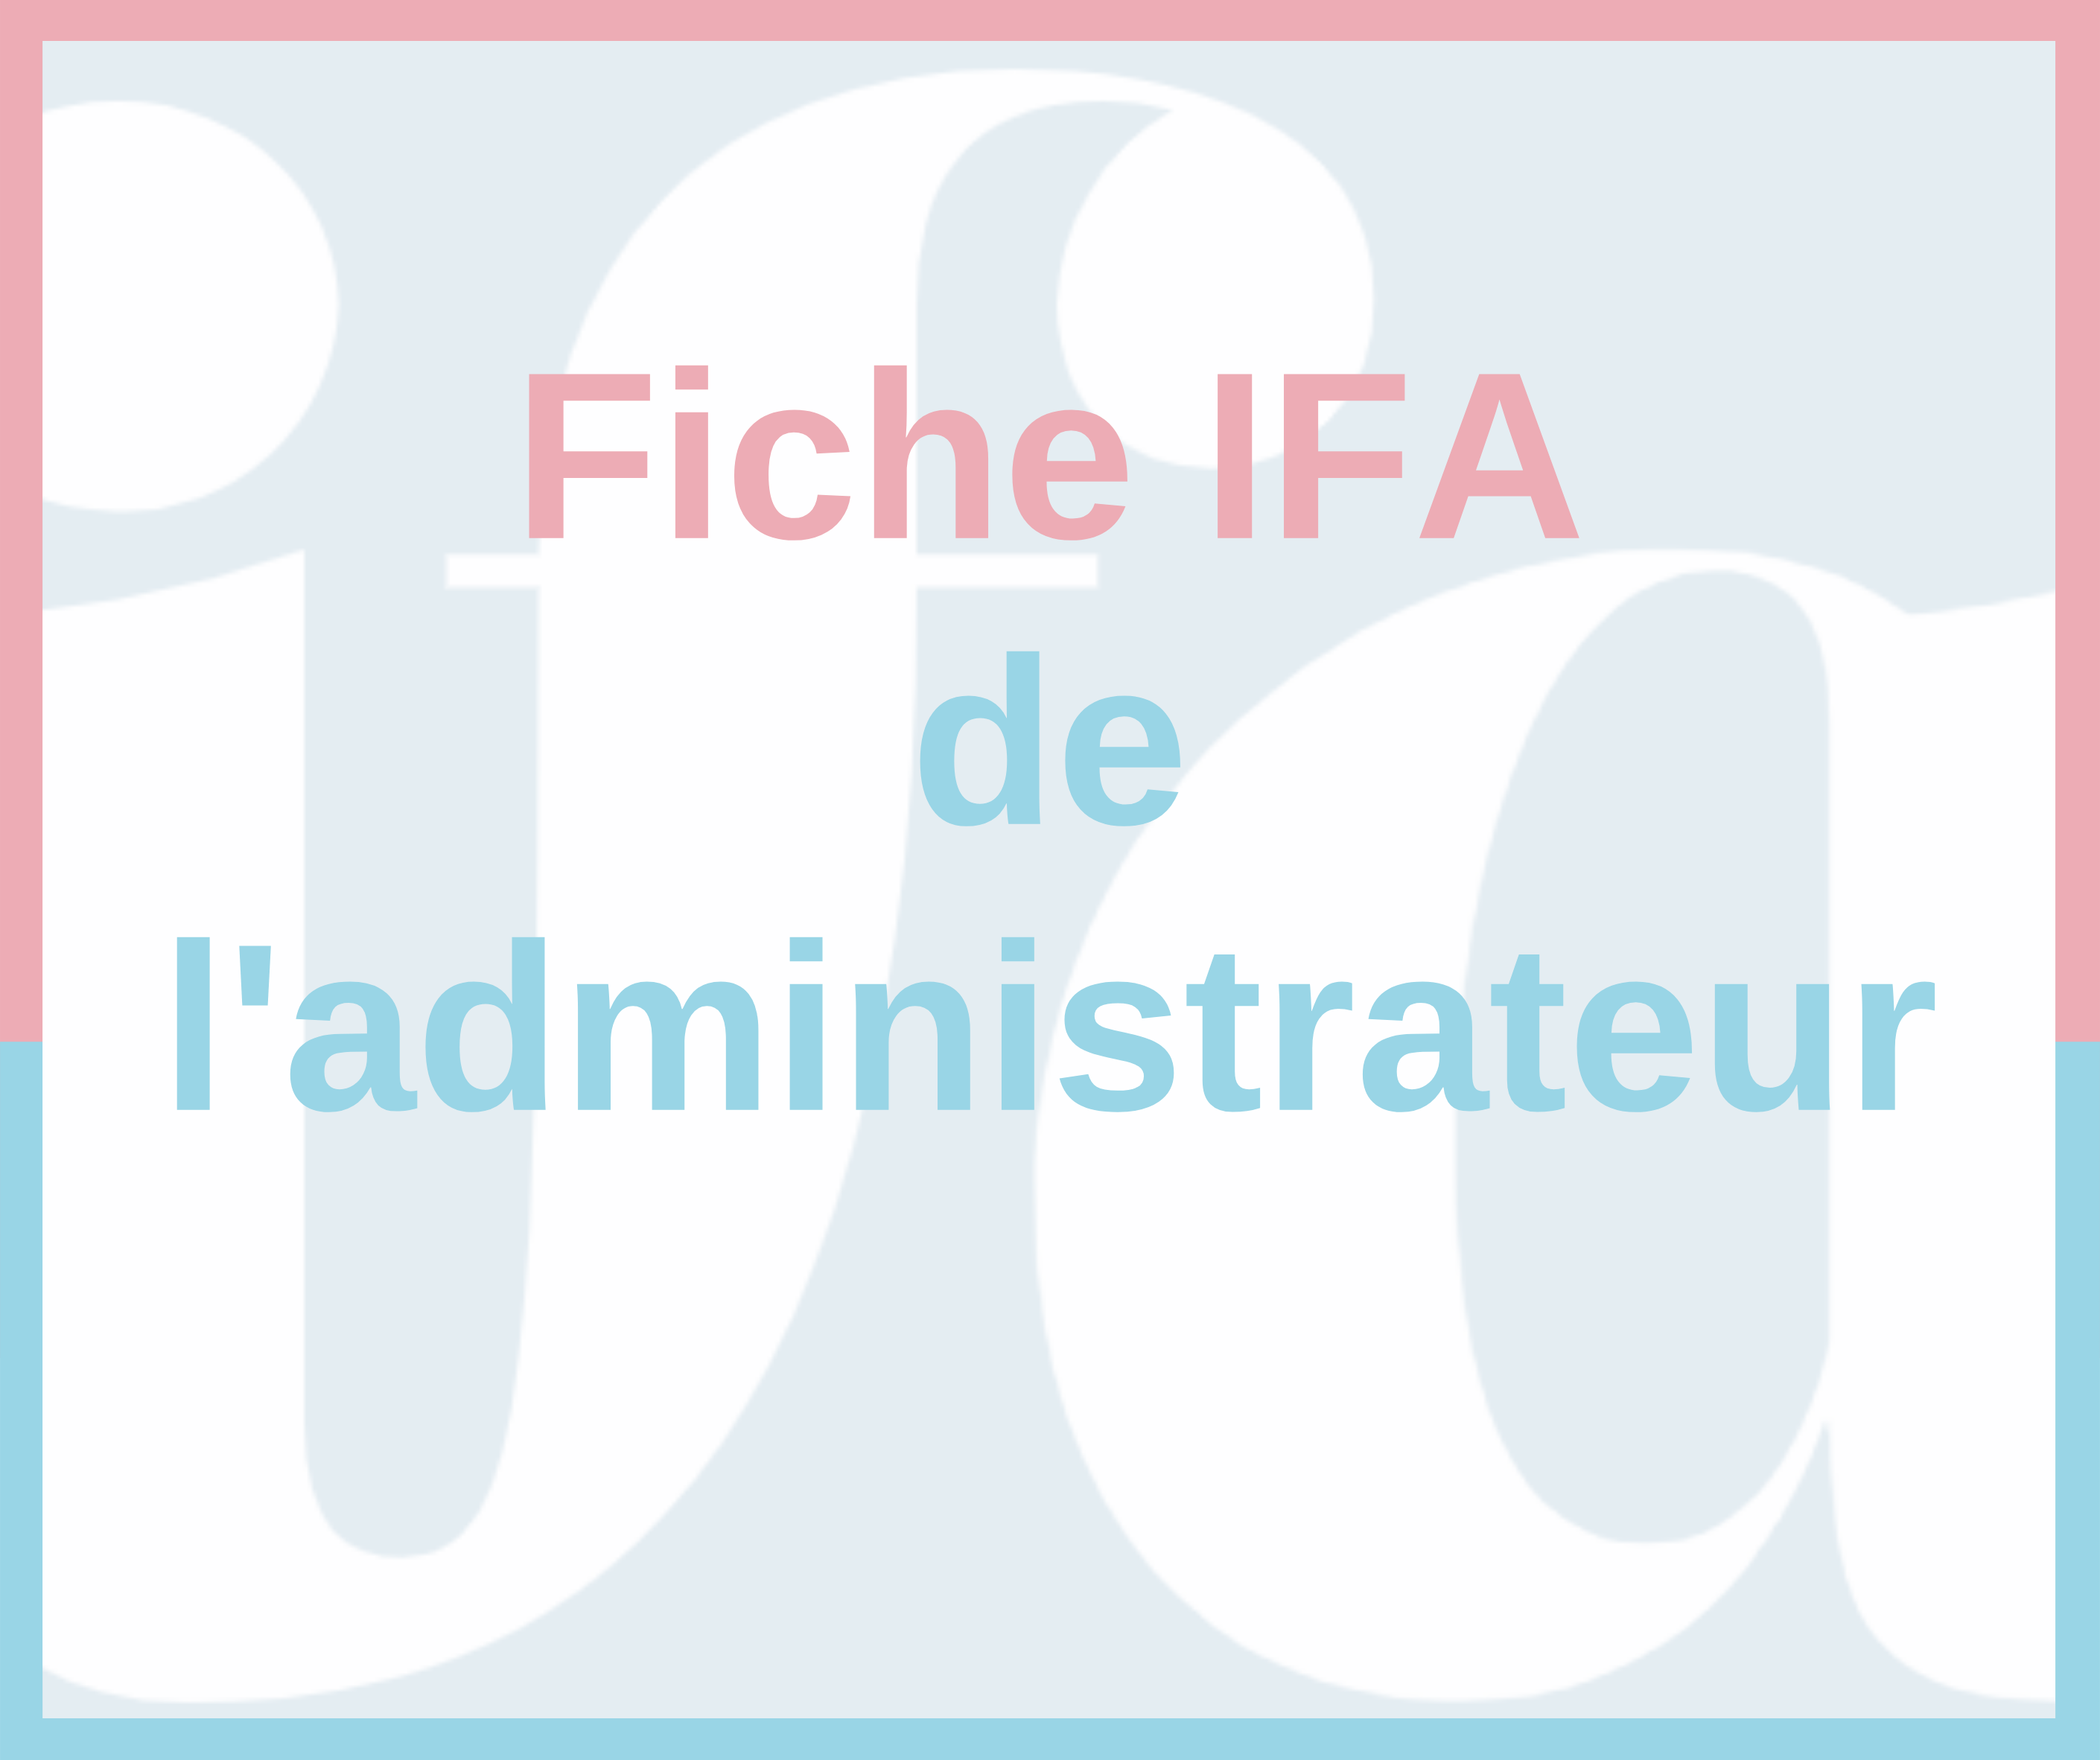 Fiche IFA - Les AG dans le contexte de crise sanitaire Covid-19